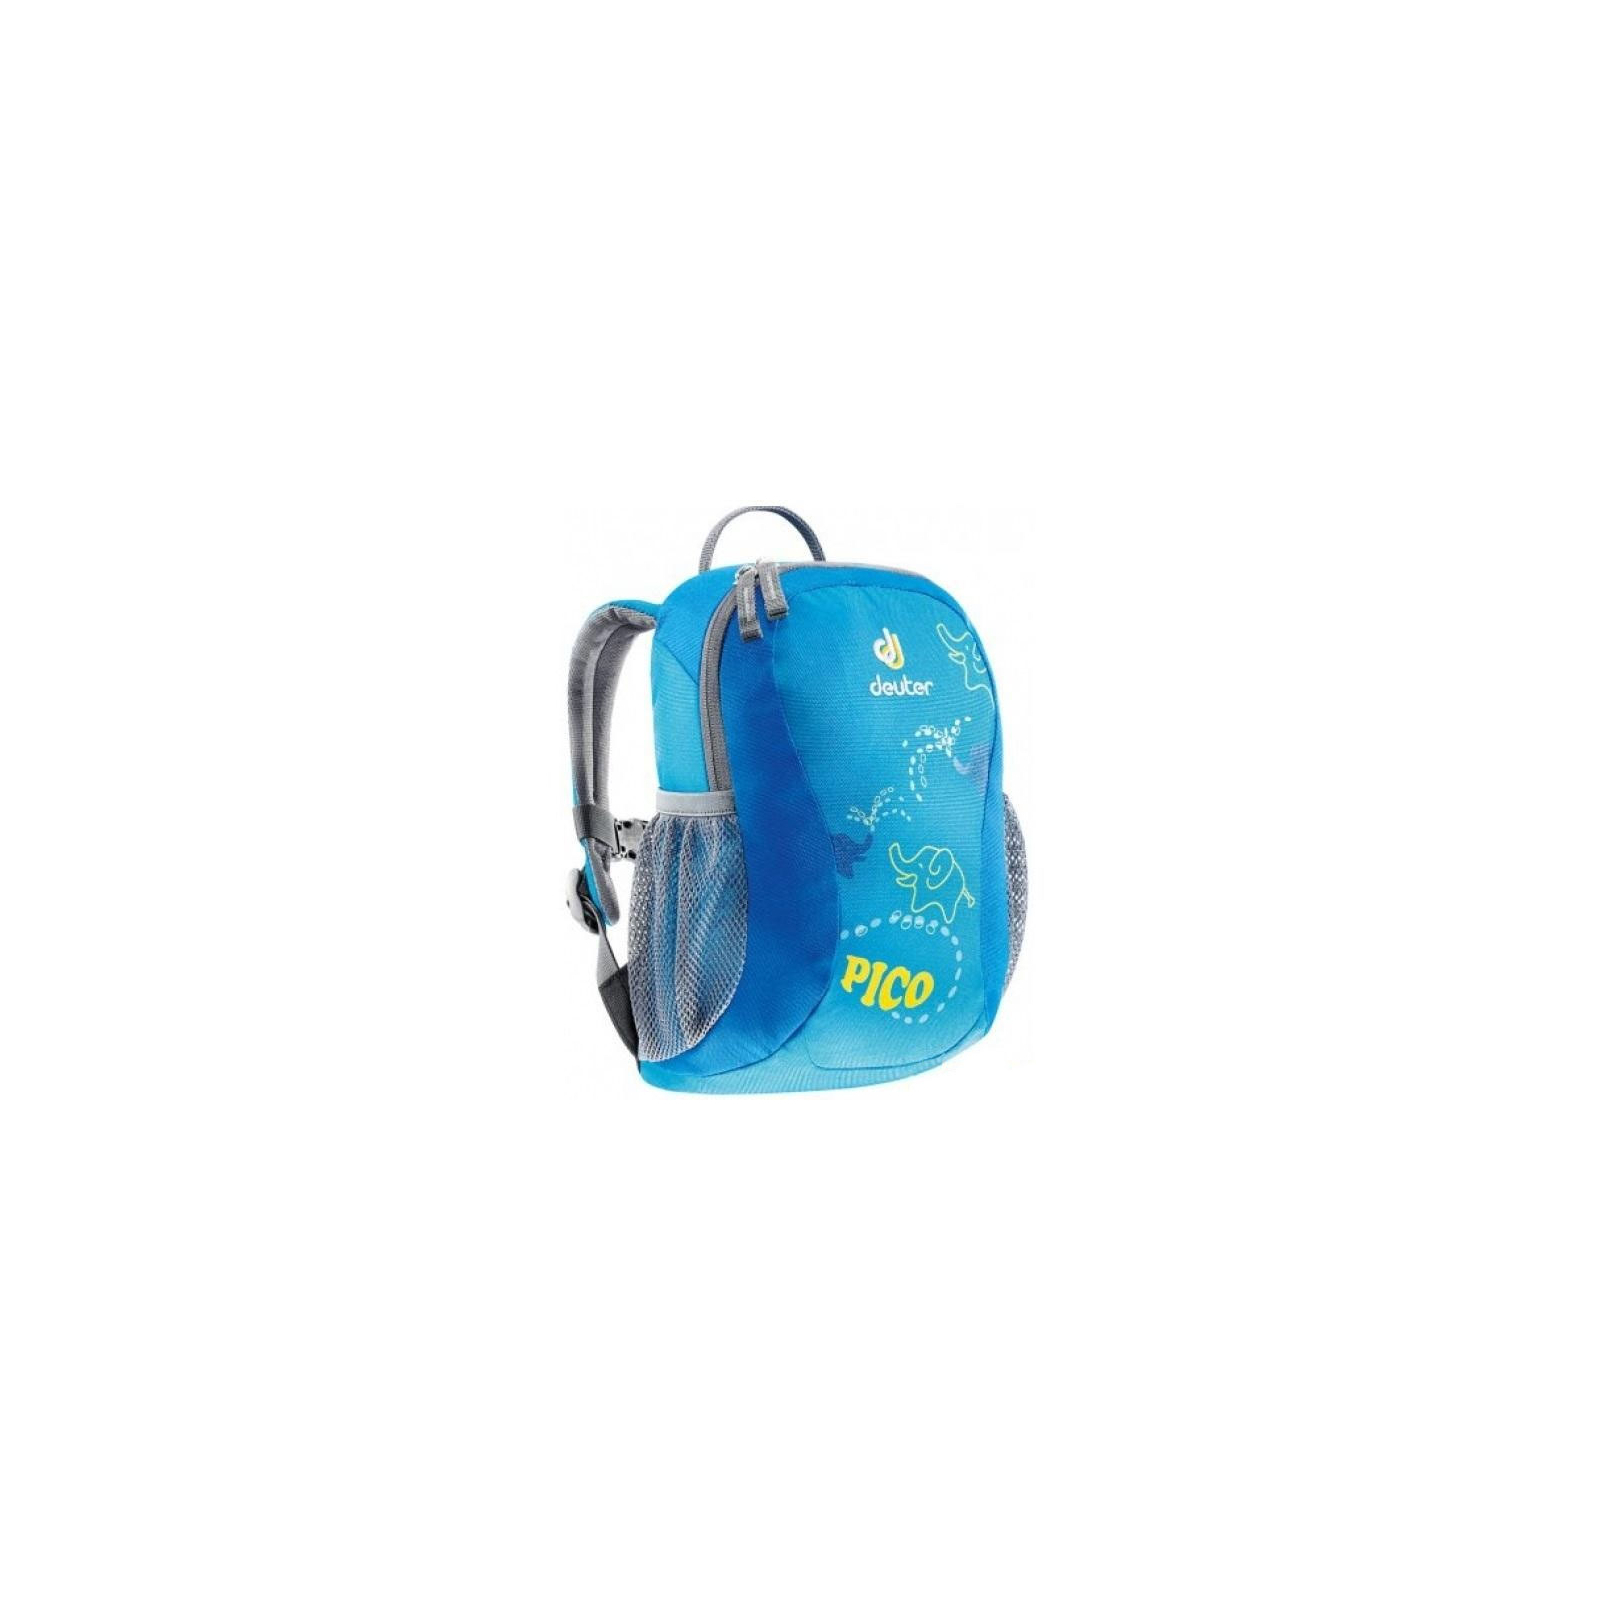 Рюкзак туристический Deuter Pico turquoise (36043 3006)